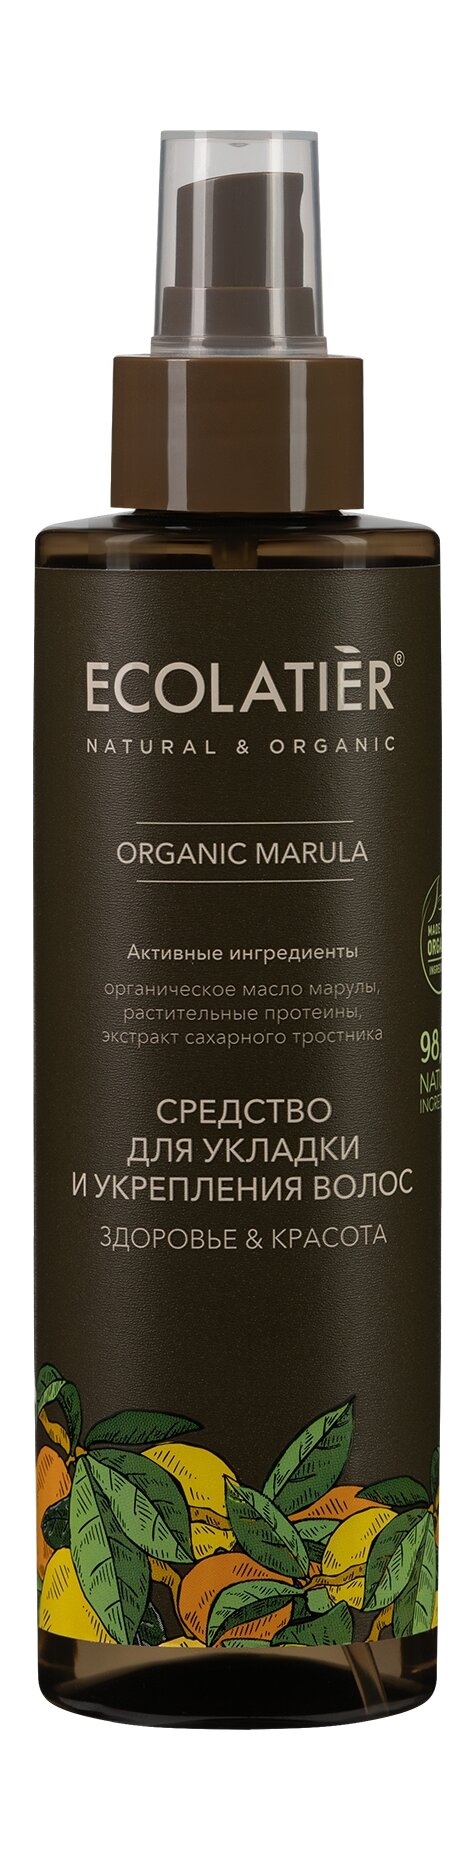 ECOLATIER Средство для укладки и укрепления волос Здоровье & Красота Organic Marula 200 мл